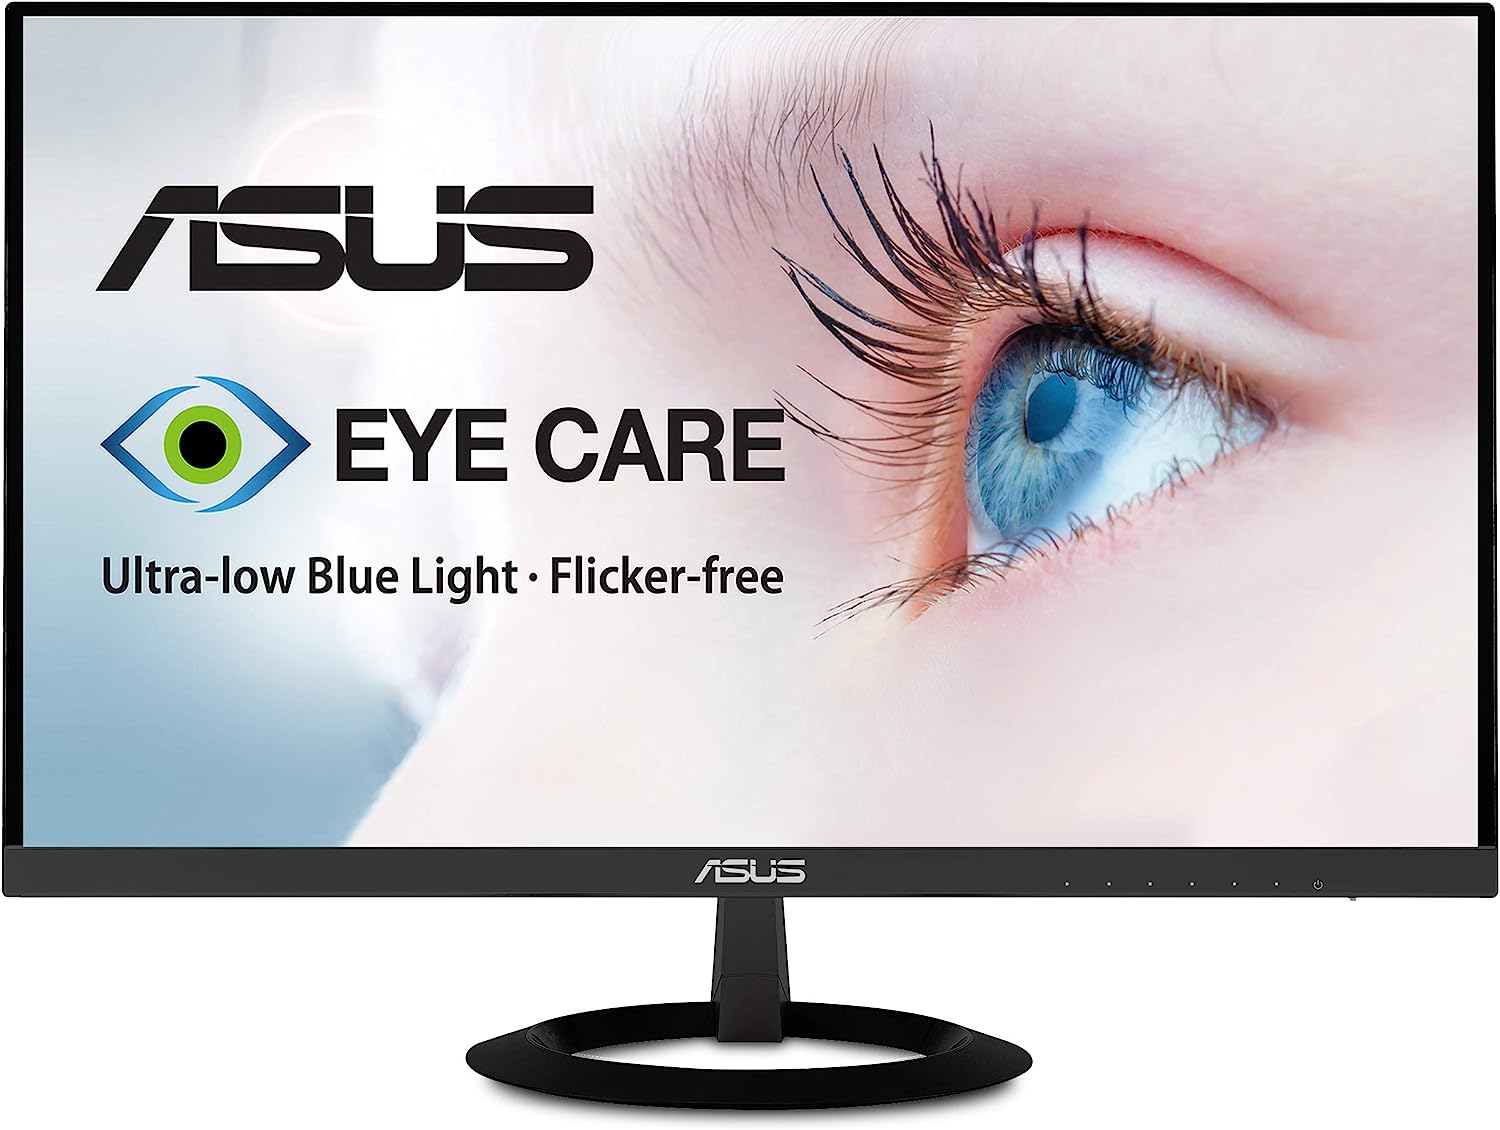 ASUS VZ279HE 27” Full HD 1080p IPS Eye Care Monitor [...]